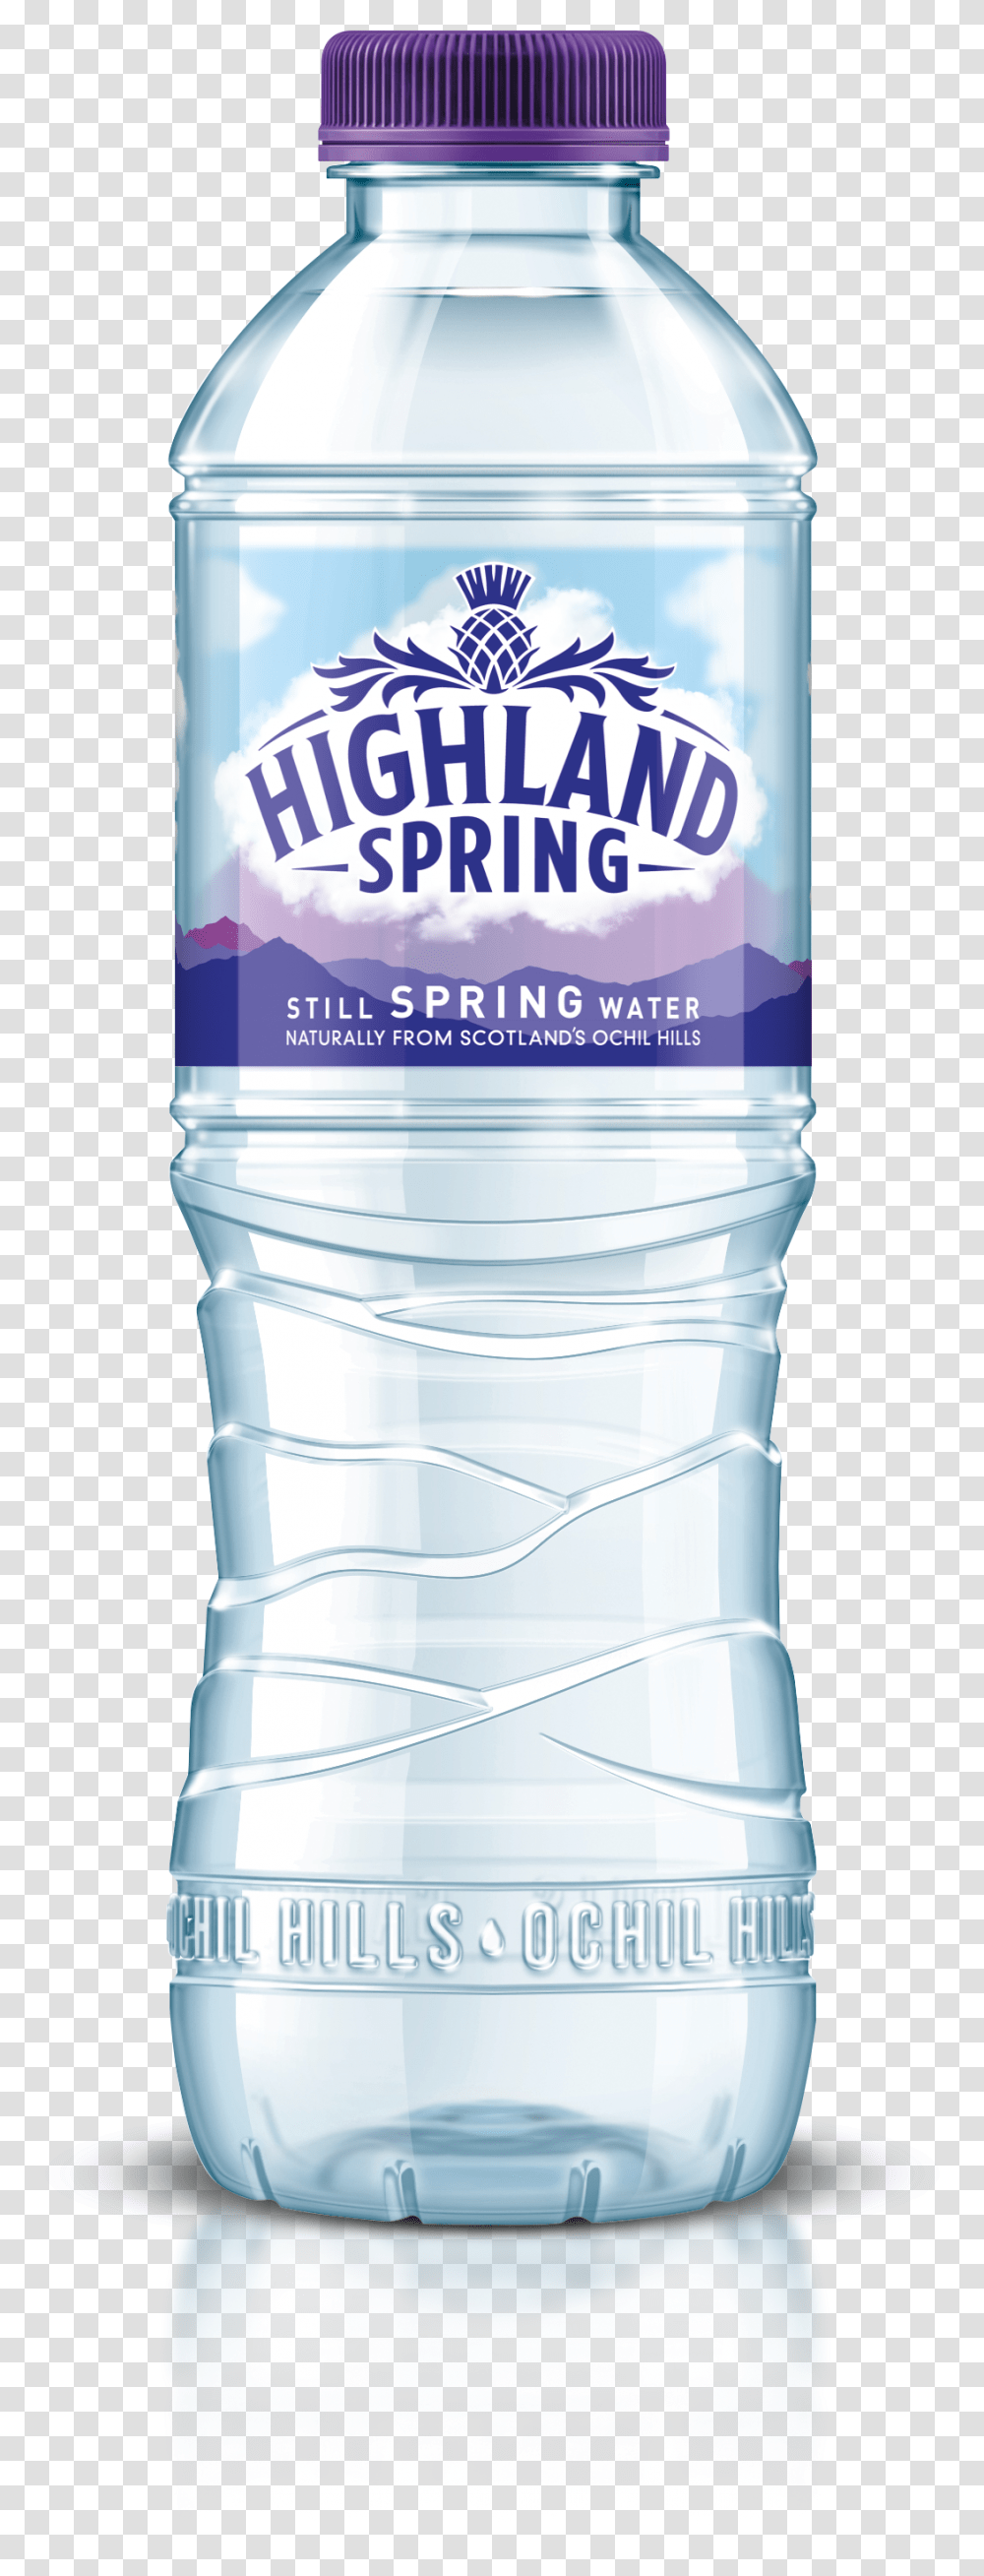 Highland Spring Water Bottle, Mineral Water, Beverage, Drink, Shaker Transparent Png